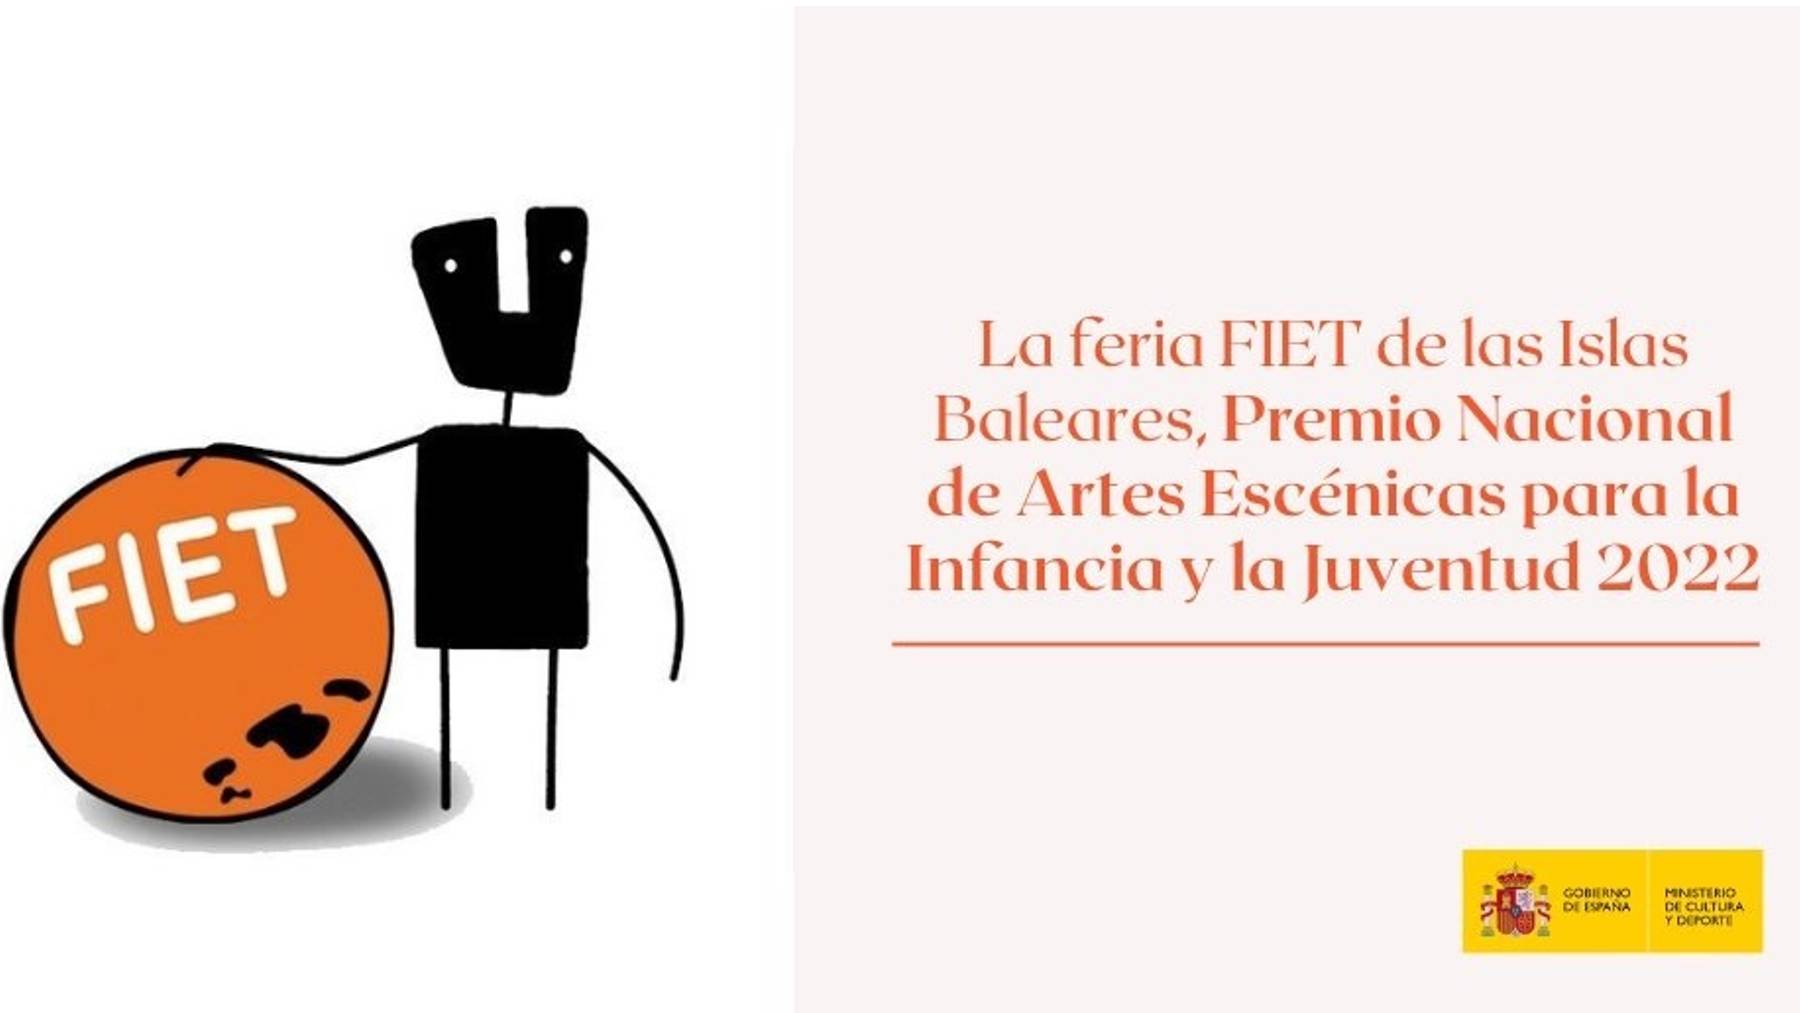 La feria FIET de Baleares, Premio Nacional de Artes Escénicas para la Infancia y la Juventud 2022.